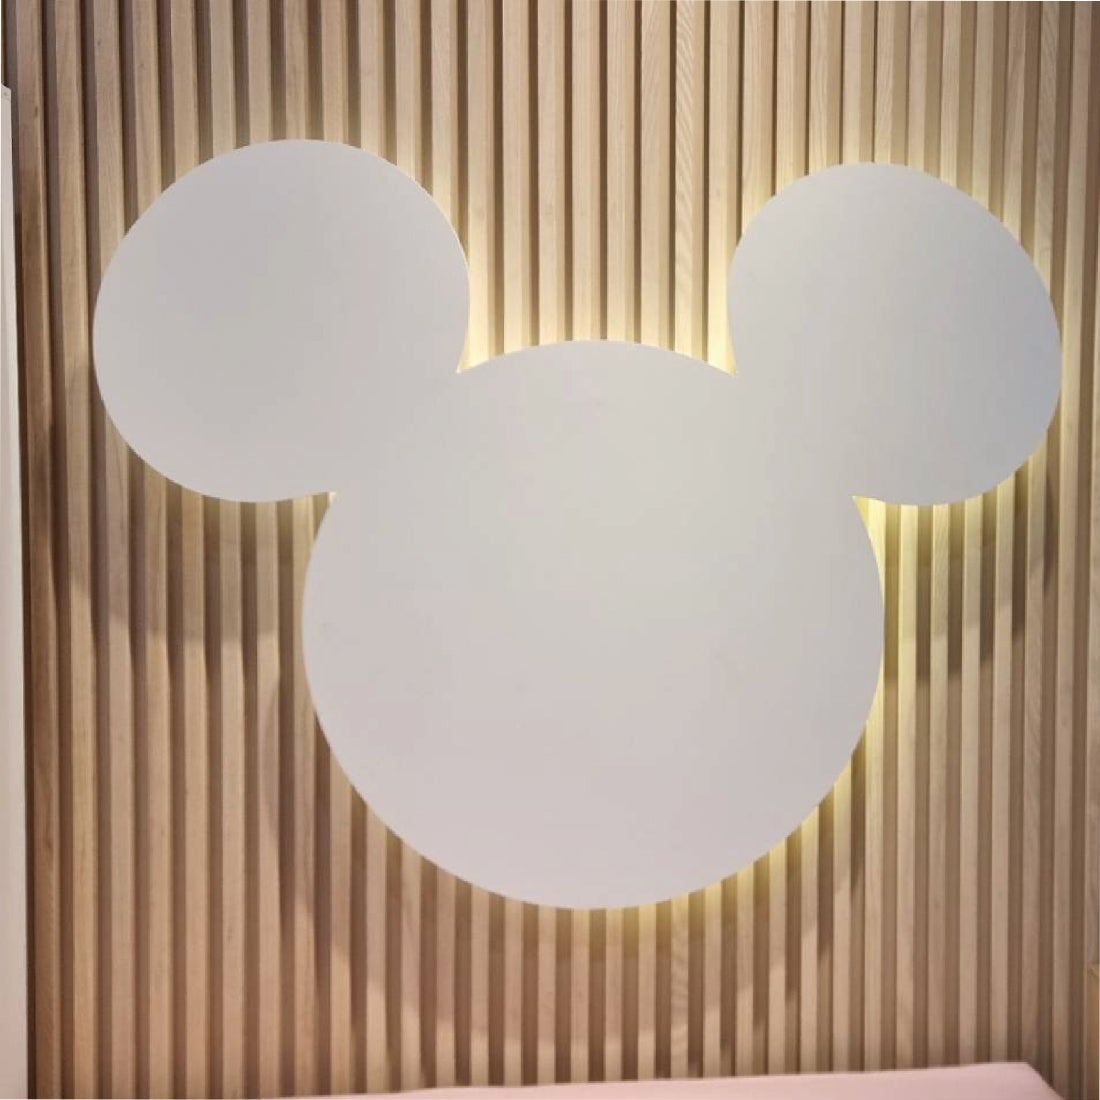 ผนังประดับแขวน Disneyhome รูปทรง Mickey Mouse สีขาว